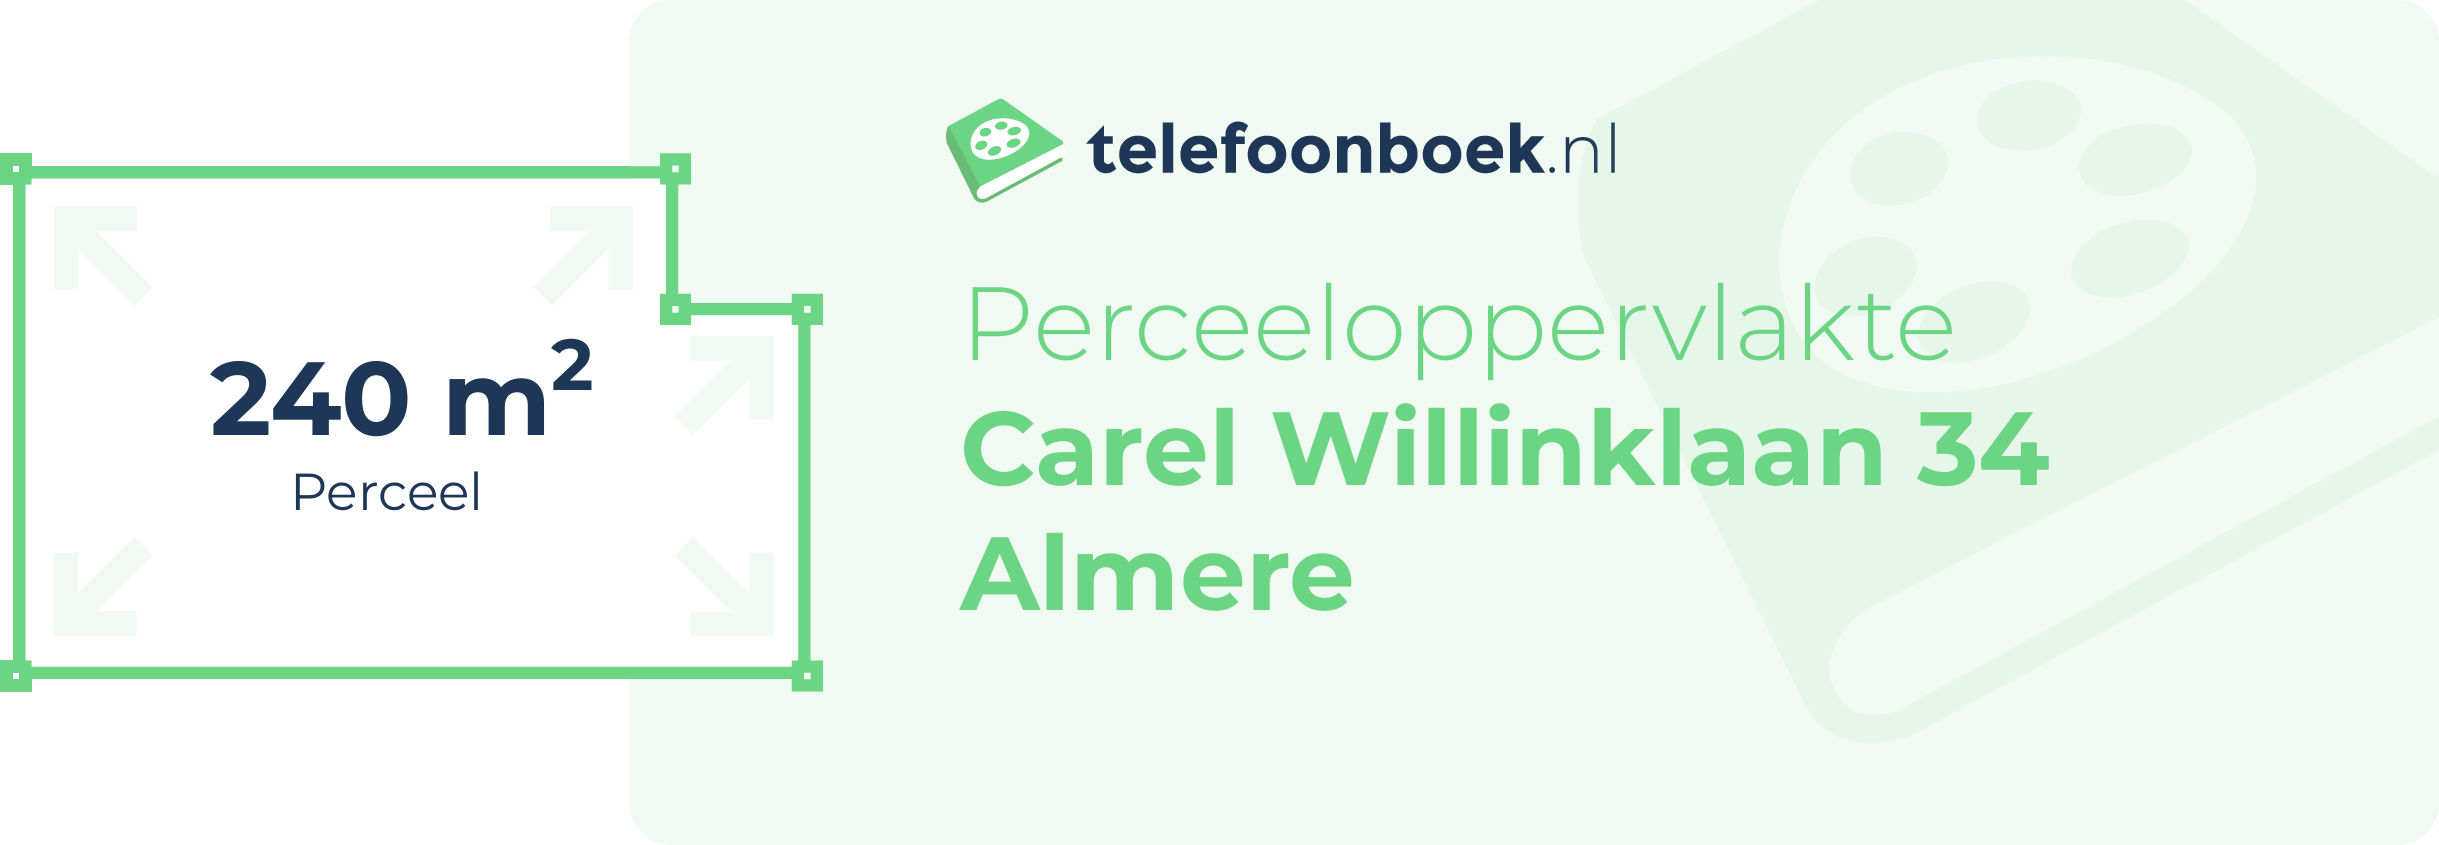 Perceeloppervlakte Carel Willinklaan 34 Almere